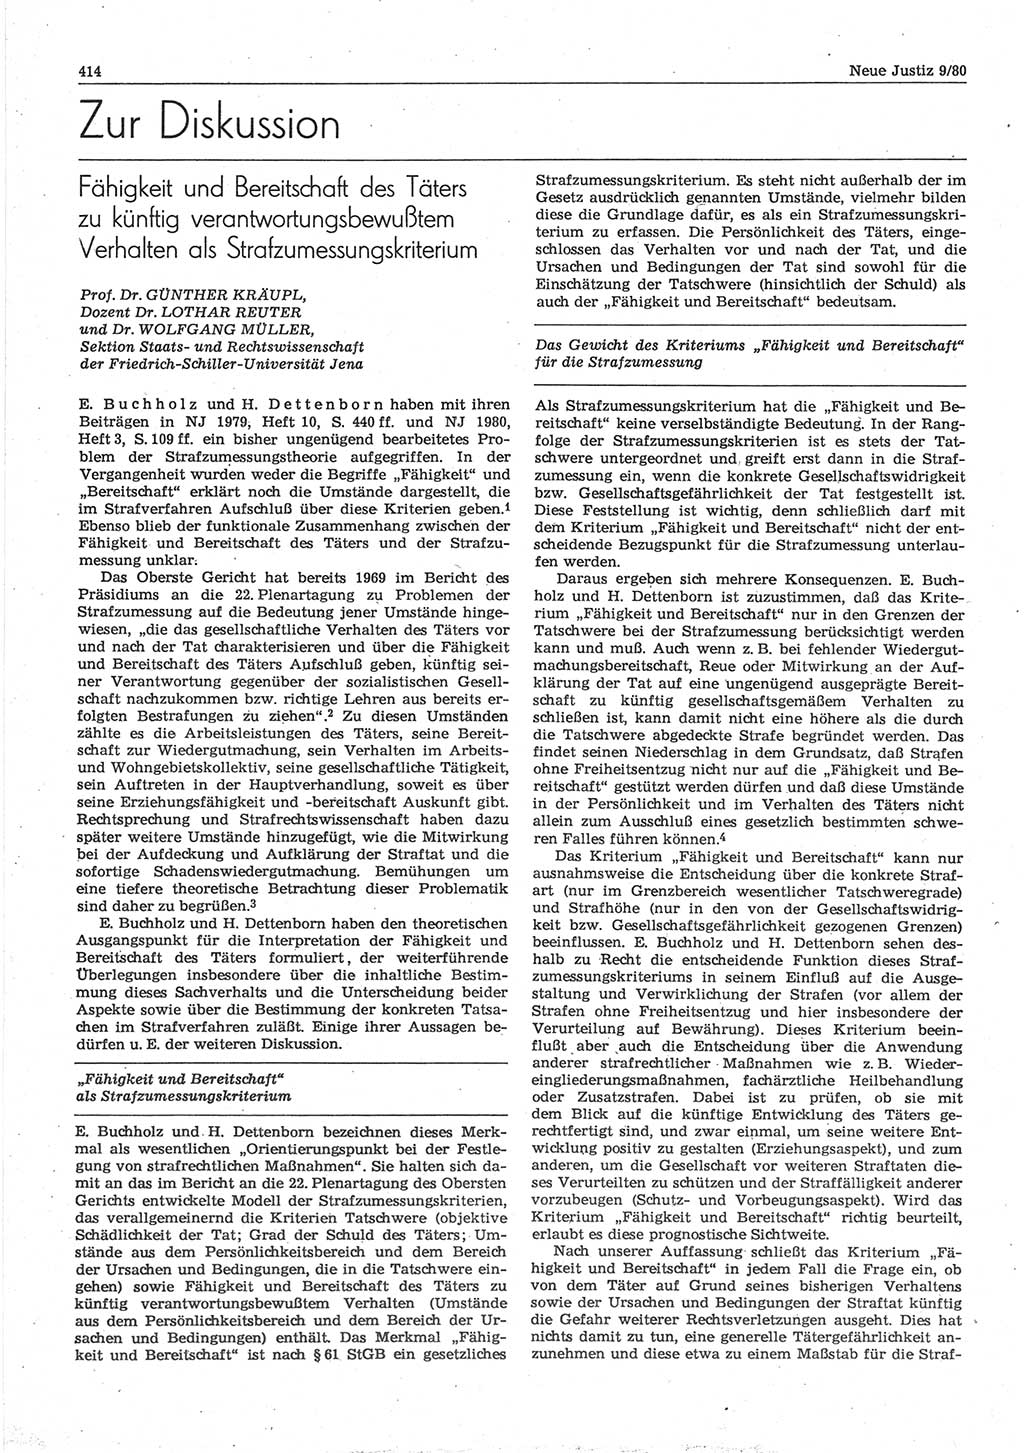 Neue Justiz (NJ), Zeitschrift für sozialistisches Recht und Gesetzlichkeit [Deutsche Demokratische Republik (DDR)], 34. Jahrgang 1980, Seite 414 (NJ DDR 1980, S. 414)